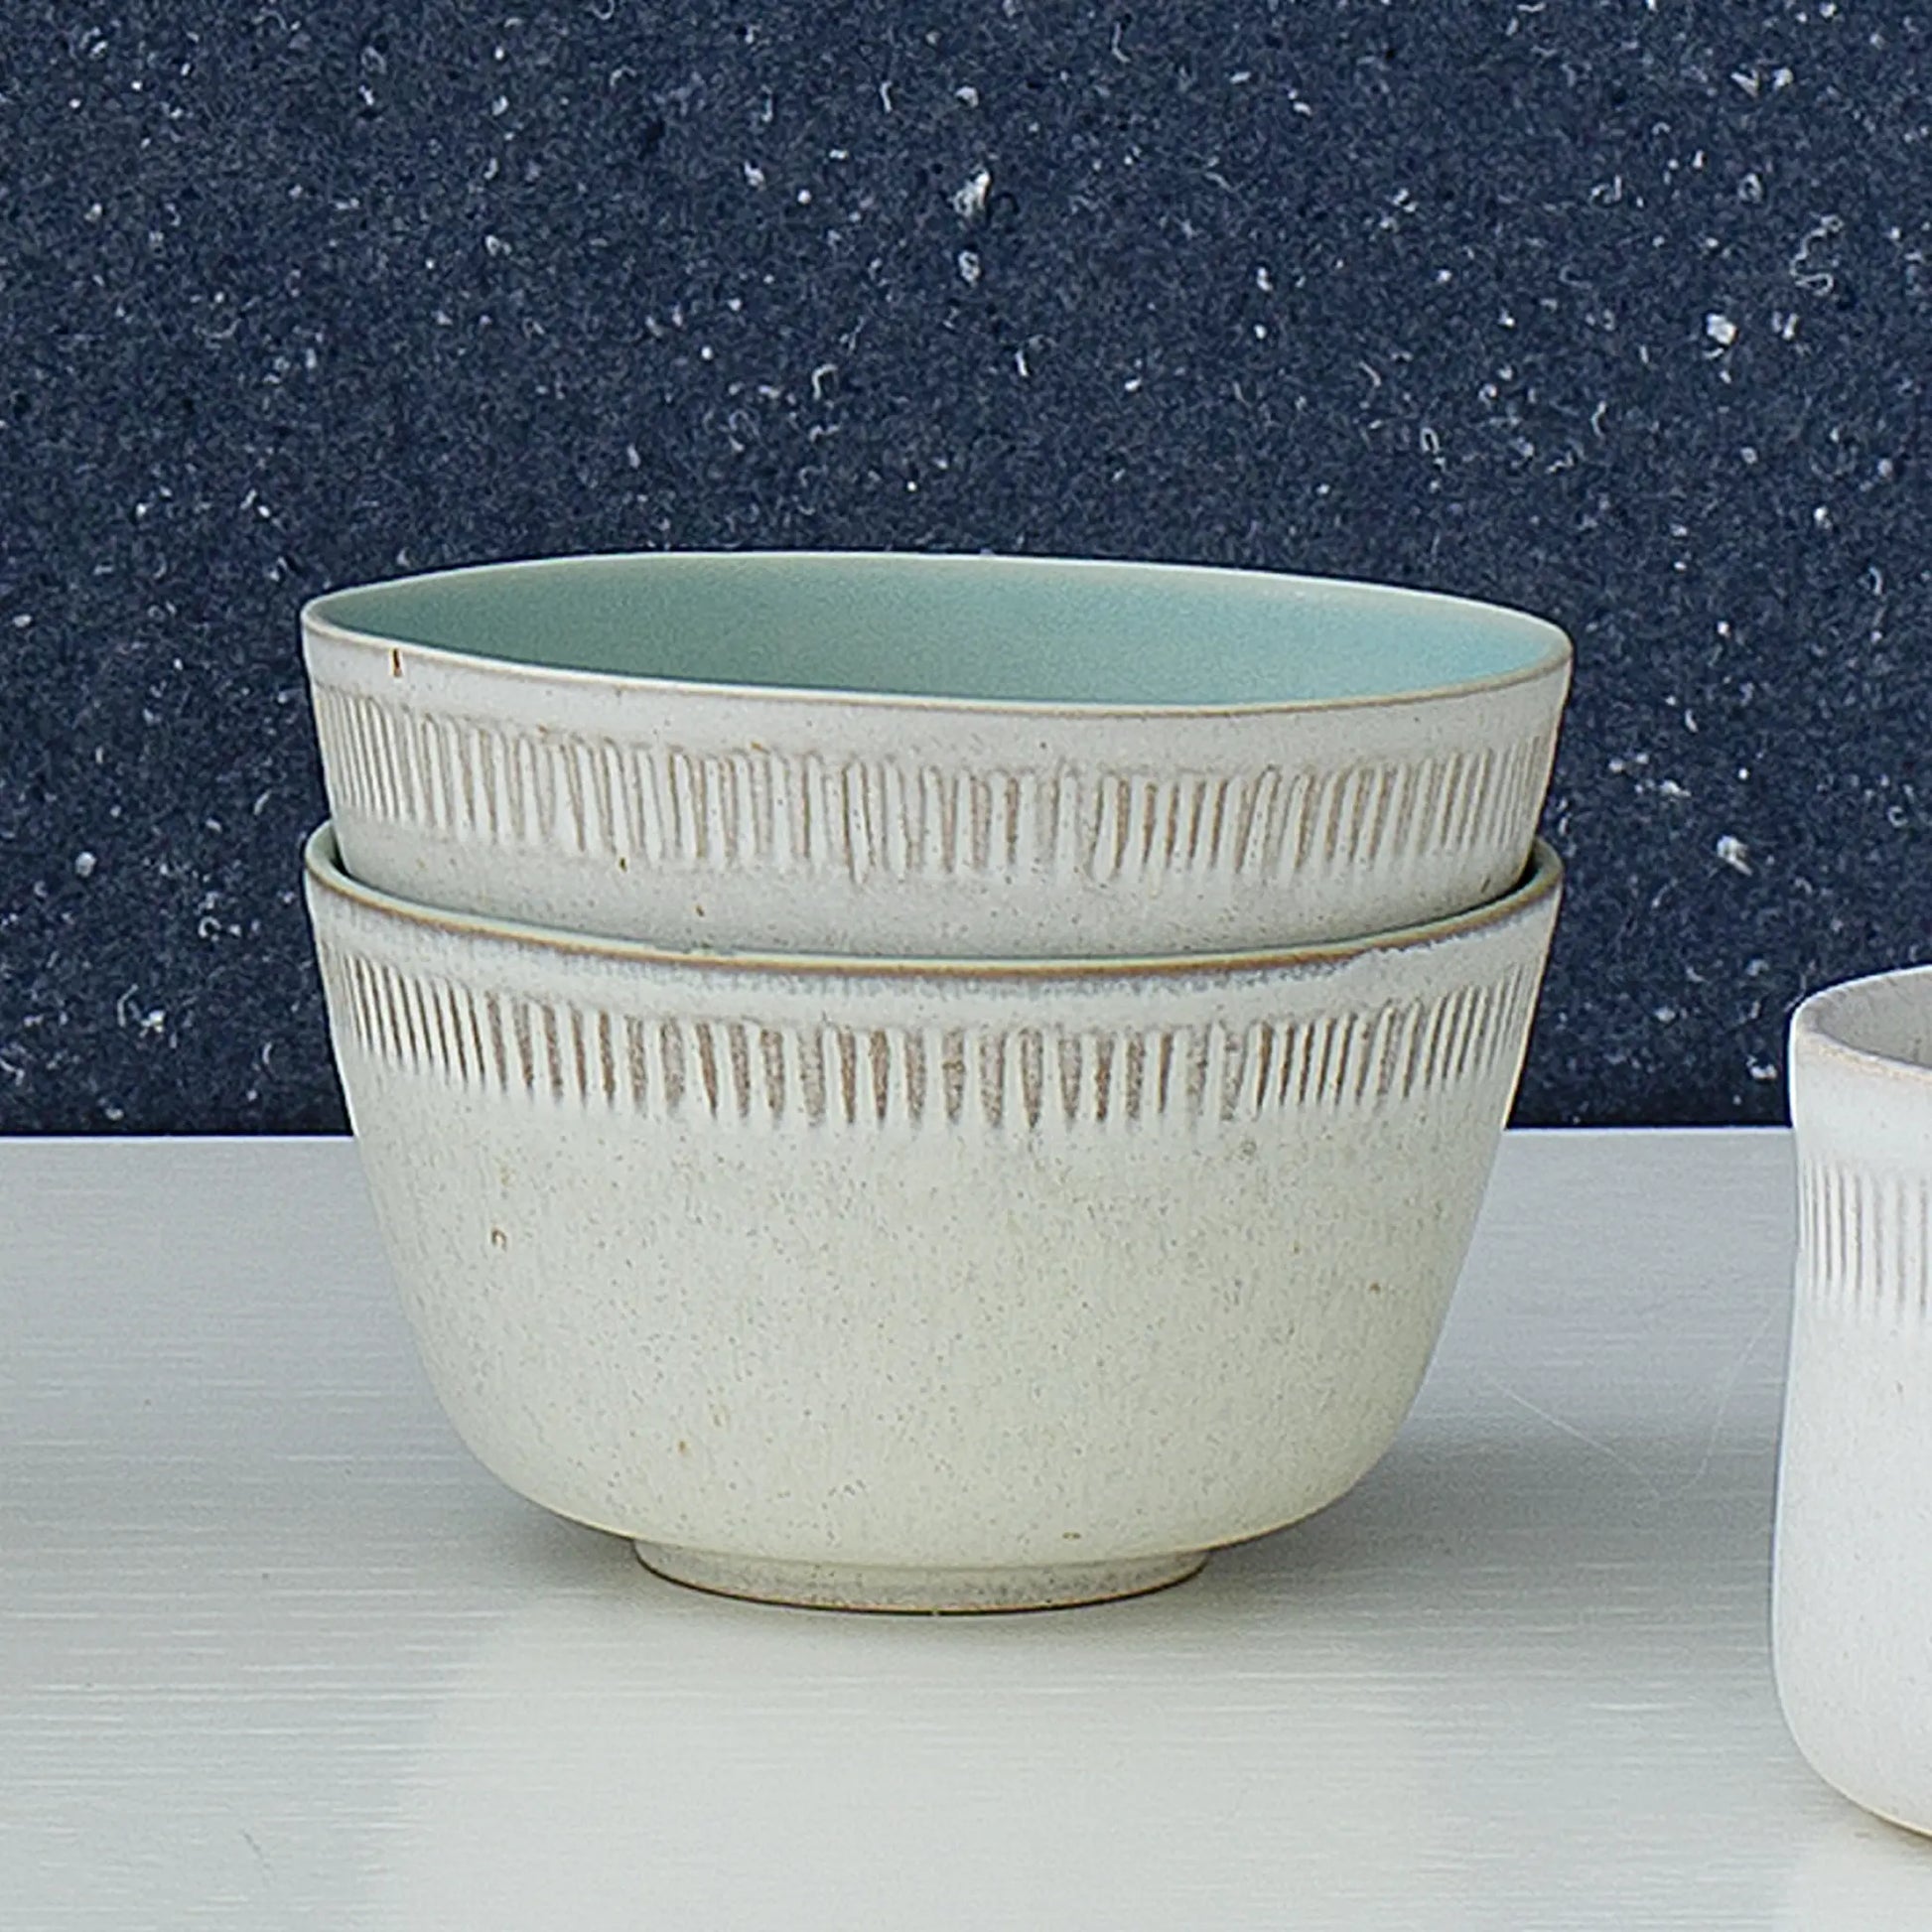 Två stycken The Food Bowl skålar från Spring Copenhagen i keramik mot en blå bakgrund